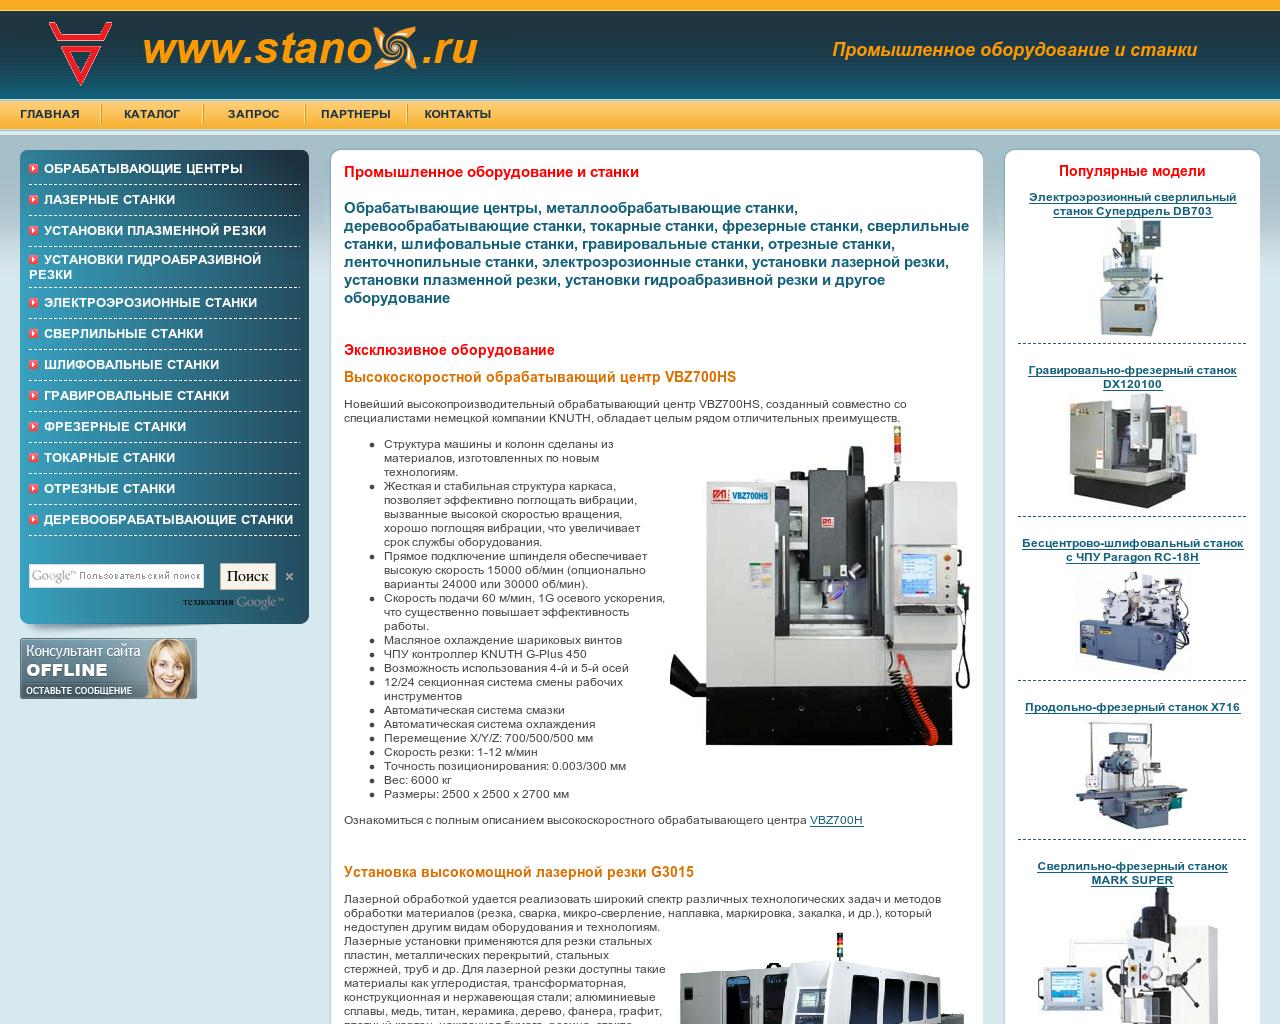 Изображение сайта stanox.ru в разрешении 1280x1024